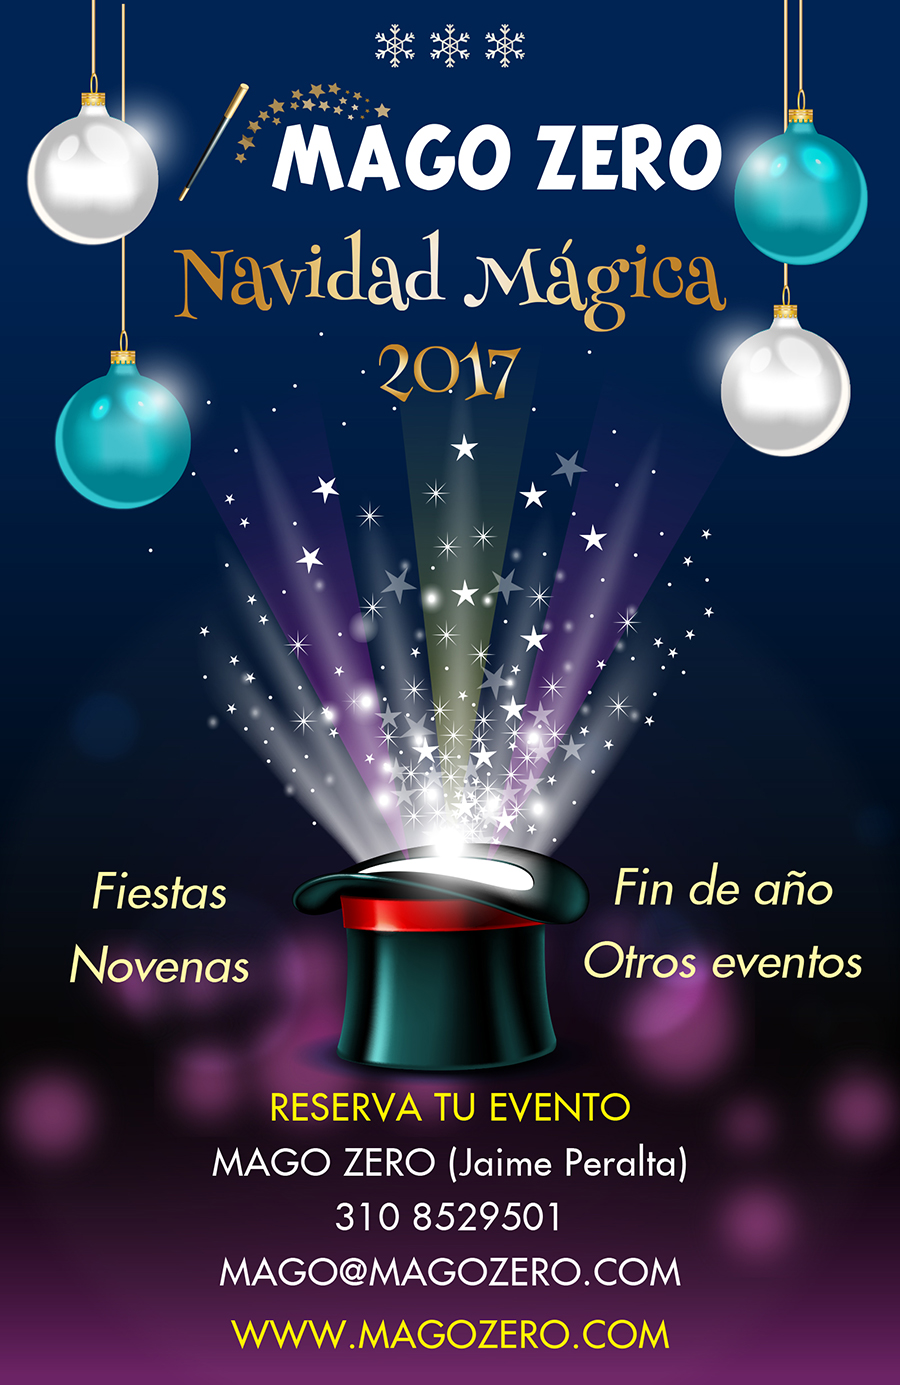 Show de magia navidad 2017